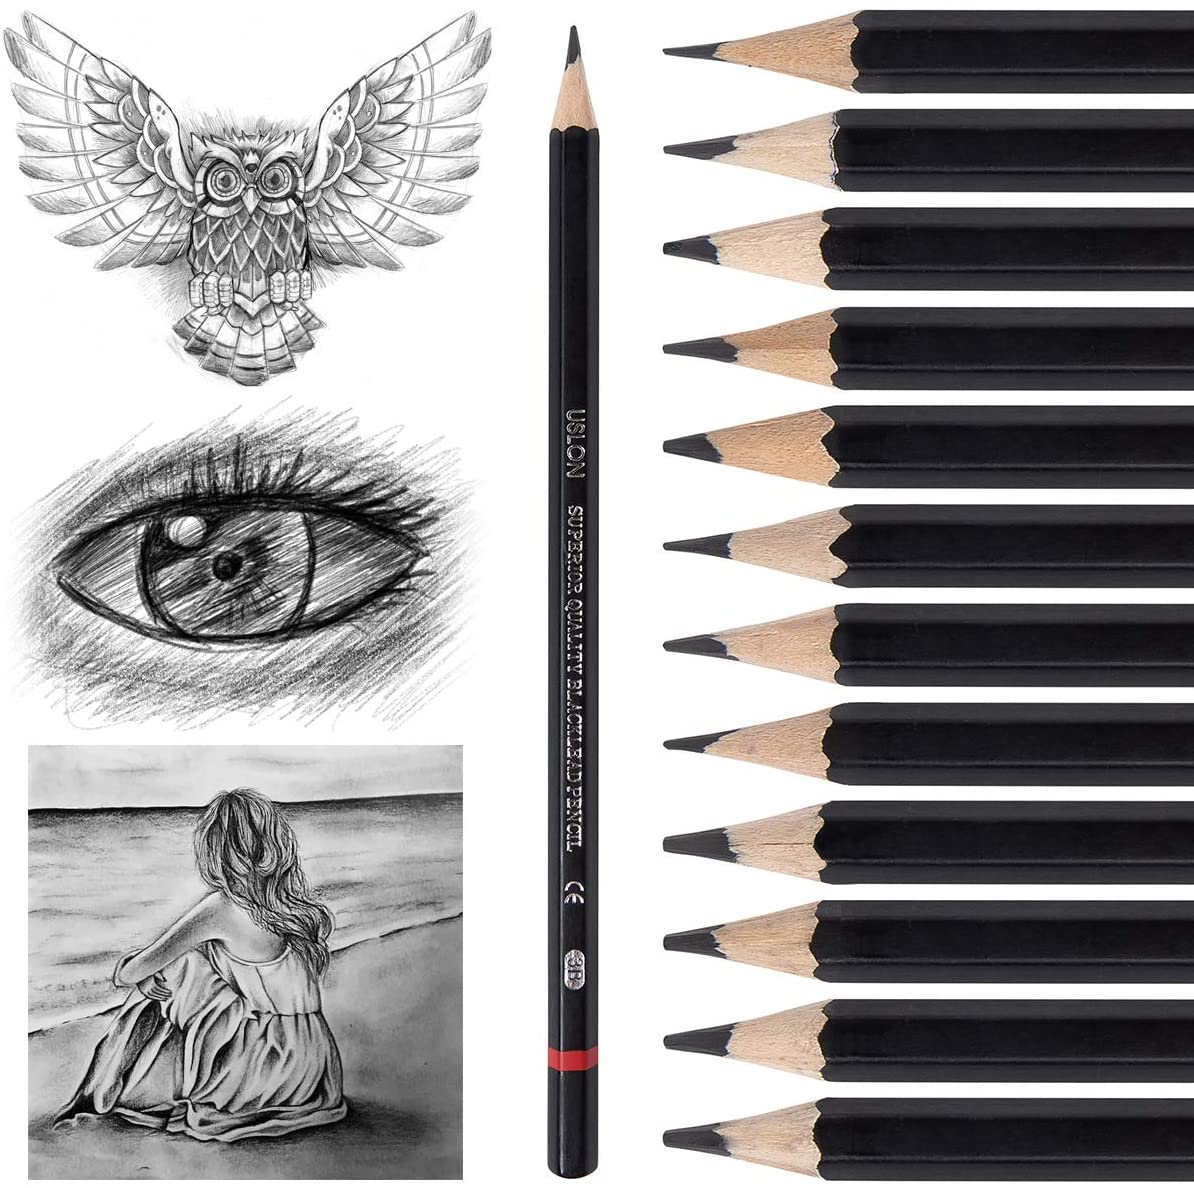 Juego de lápices de dibujo profesional de 12 piezas - Lápices de grafito de  dibujo artístico (8B - 2H), ideales para dibujar, dibujar, sombrear,  lápices de artista para principiantes y artistas profesionales